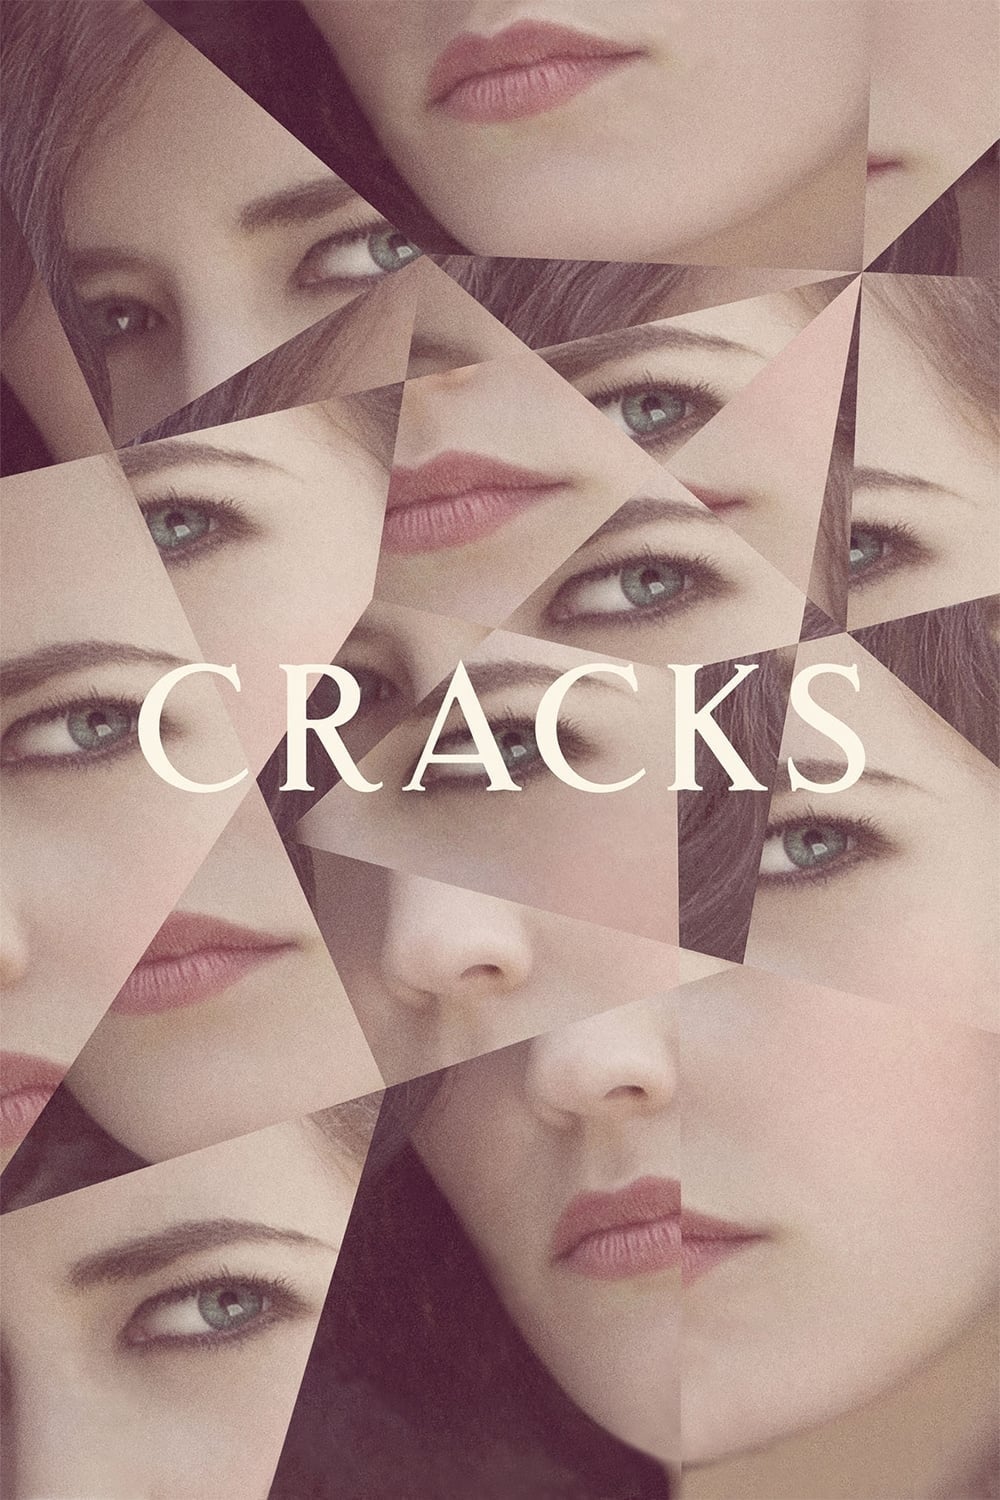 Cracks [Sub-ITA] (2009)